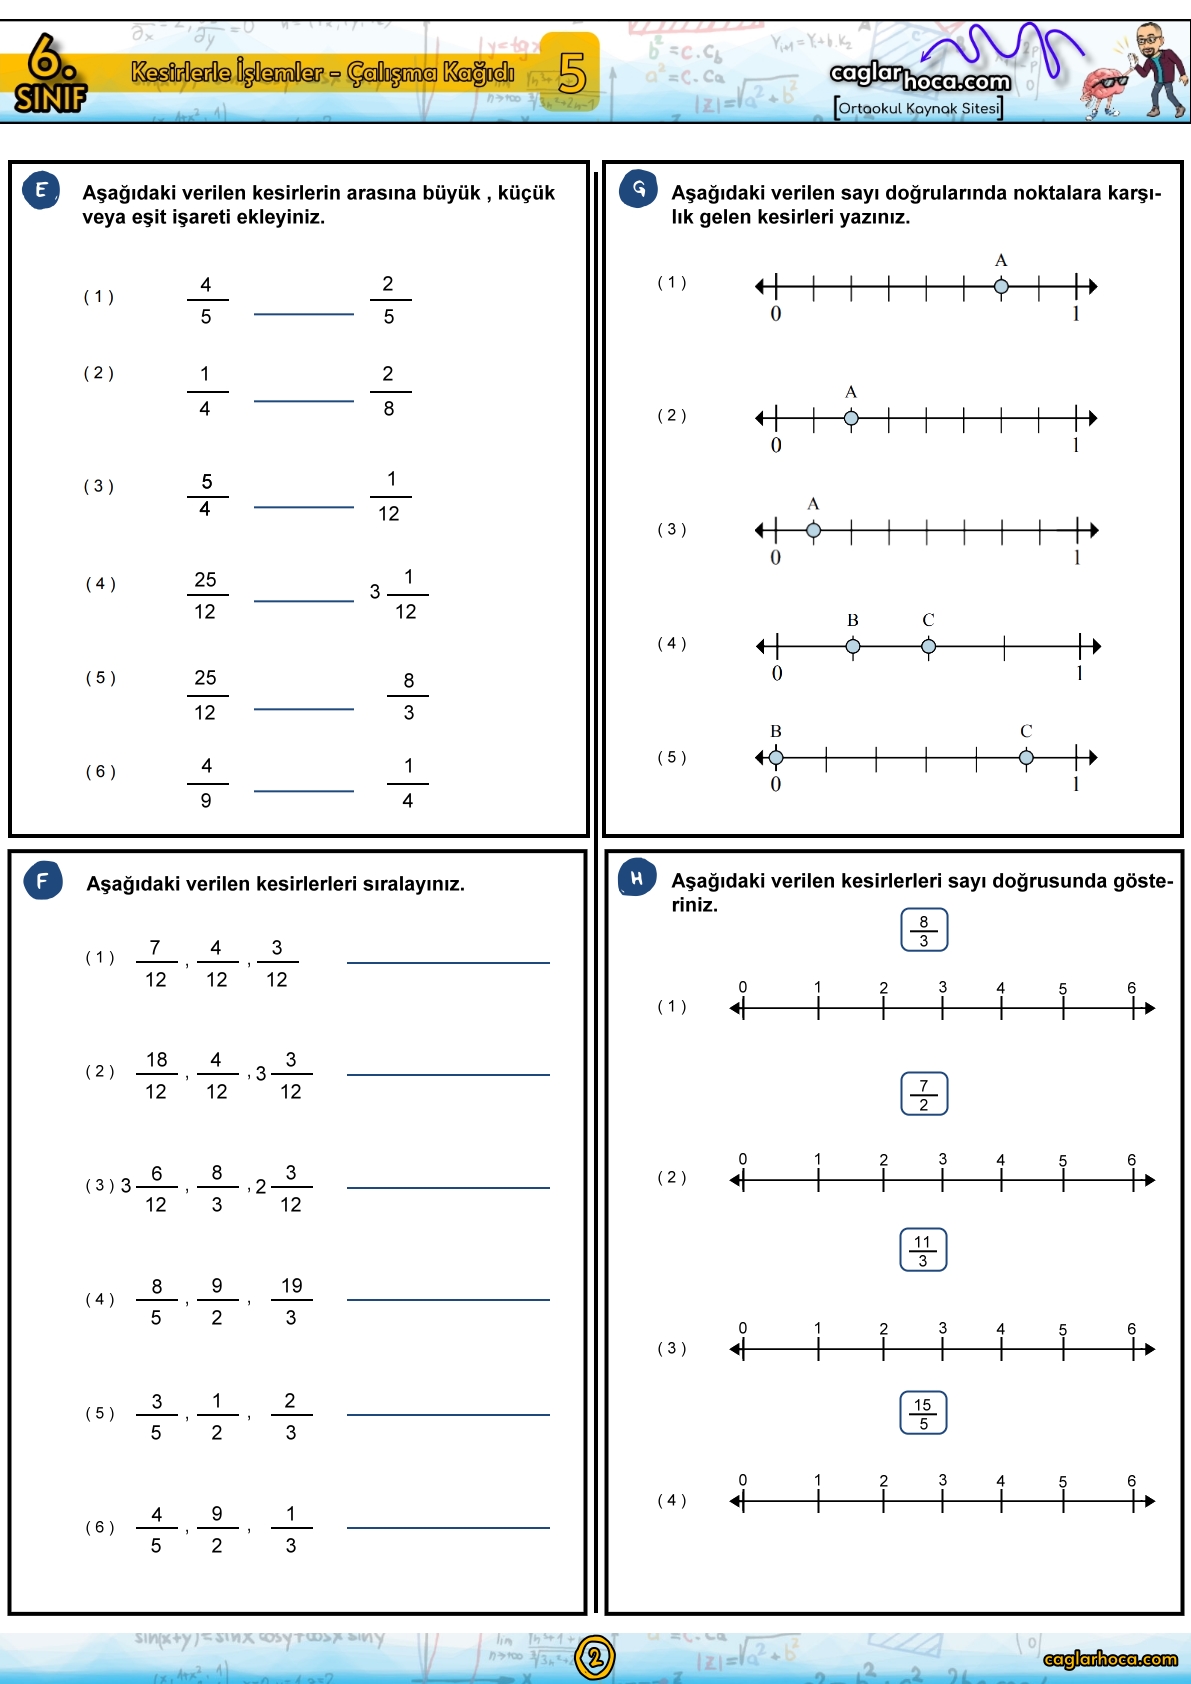 kesirlerle işlemler,6.sınıf kesirlerle işlemler,6. sınıf kesirlerle işlemler,kesirler,kesirlerle işlemler 6.sınıf,kesirlerle işlemler soru çözümü,kesirlerle i̇şlemler,6. sınıf matematik kesirlerle işlemler,kesirlerle işlemler konu anlatımı 6.sınıf,kesirler soru çözümü,6. sınıf kesirler,6.sınıf kesirler,kesirlerle çarpma işlemi,kesirlerle işlemler 6. sınıf,kesirlerle işlemler konu anlatımı,6. sınıf matematik kesirler konu anlatımı,kesirler 6.sınıf